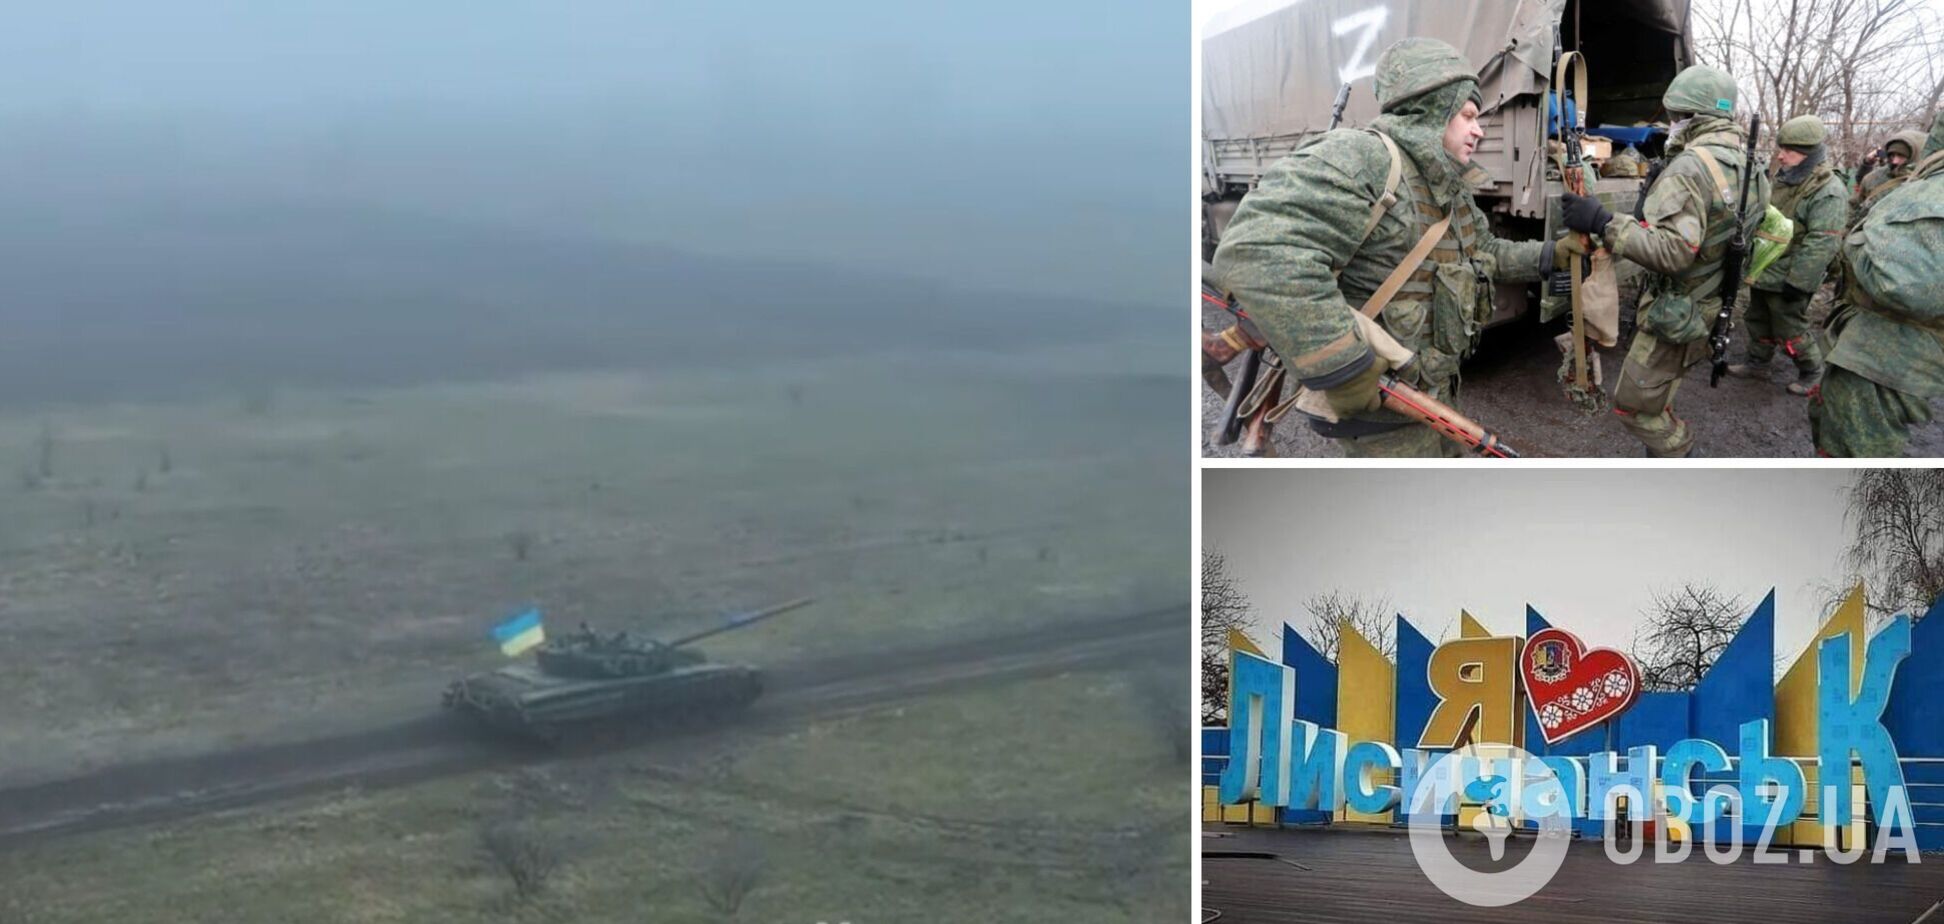 'Бавовна' удалась: на Луганщине украинский танк разнес позиции оккупантов с дистанции в 20 метров. Видео